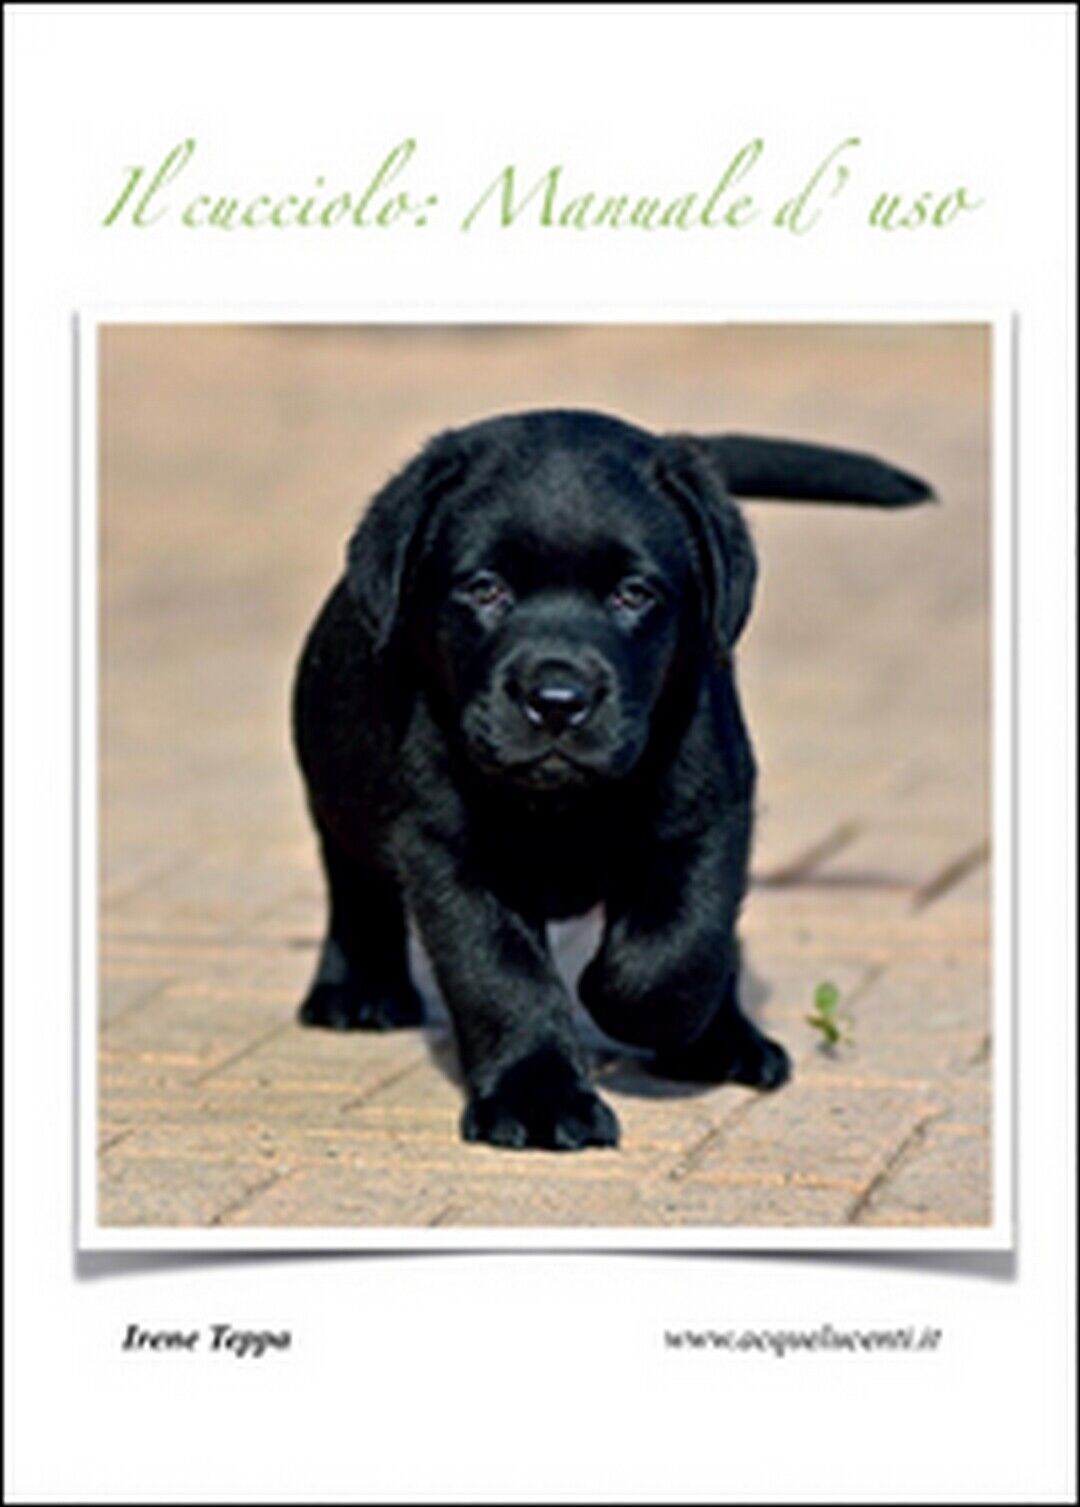 Il cucciolo: manuale d'uso  di Irene Teppa,  2015,  Youcanprint